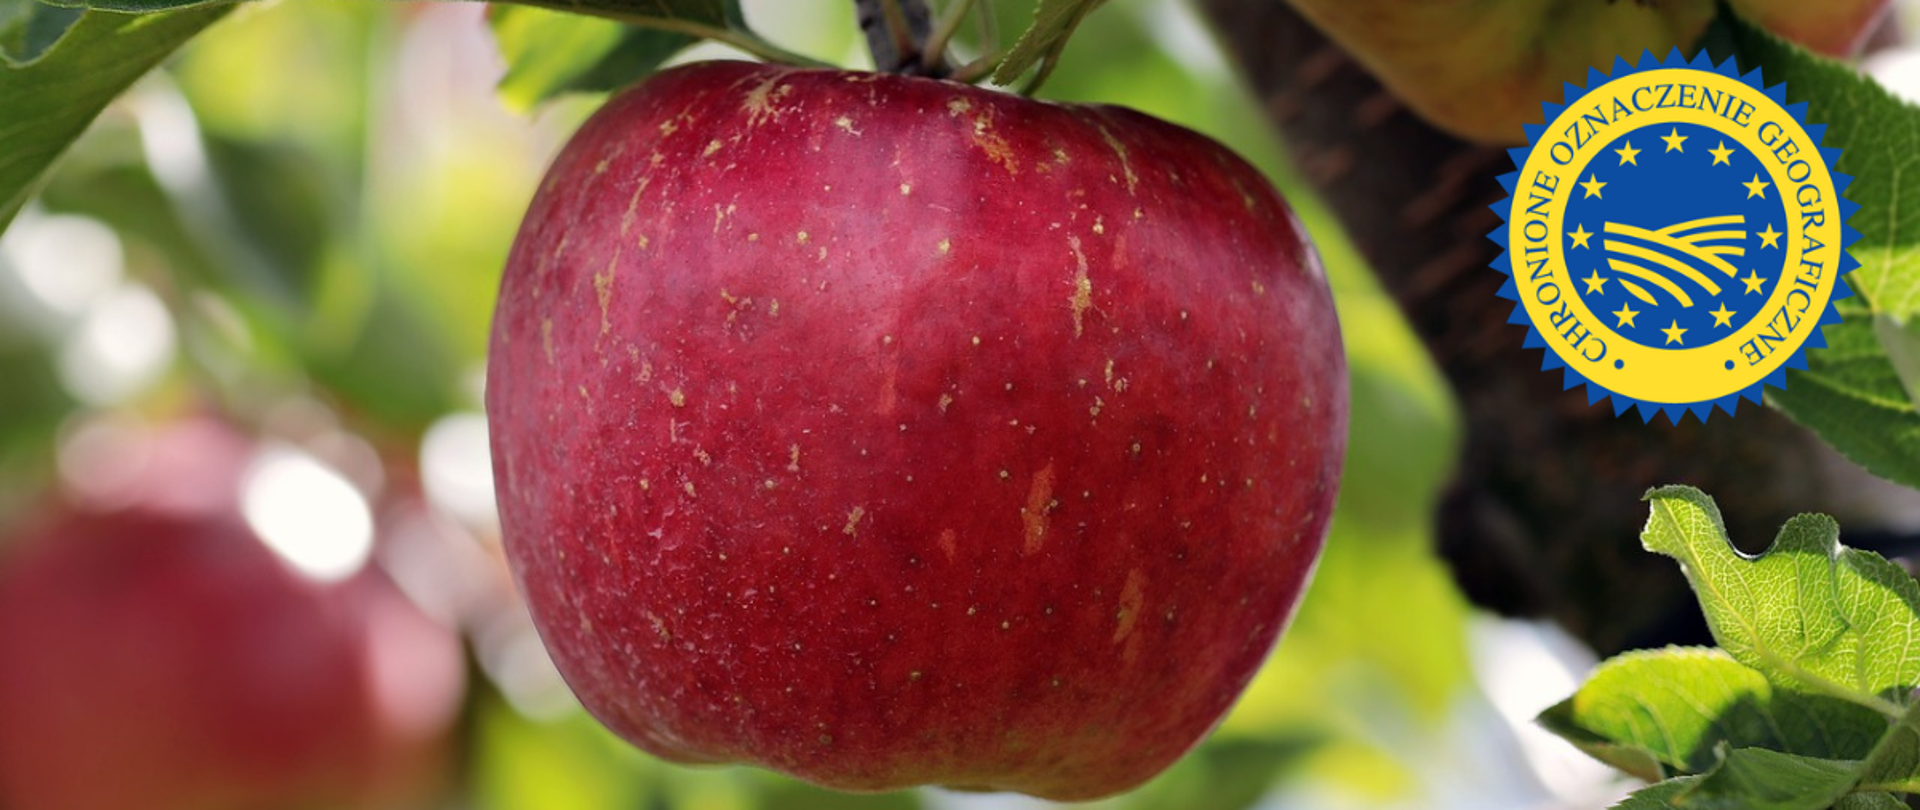 Czerwone jabłko grójeckie na drzewie. W tle po lewej inne jabłko, po prawej gałąź i liście.